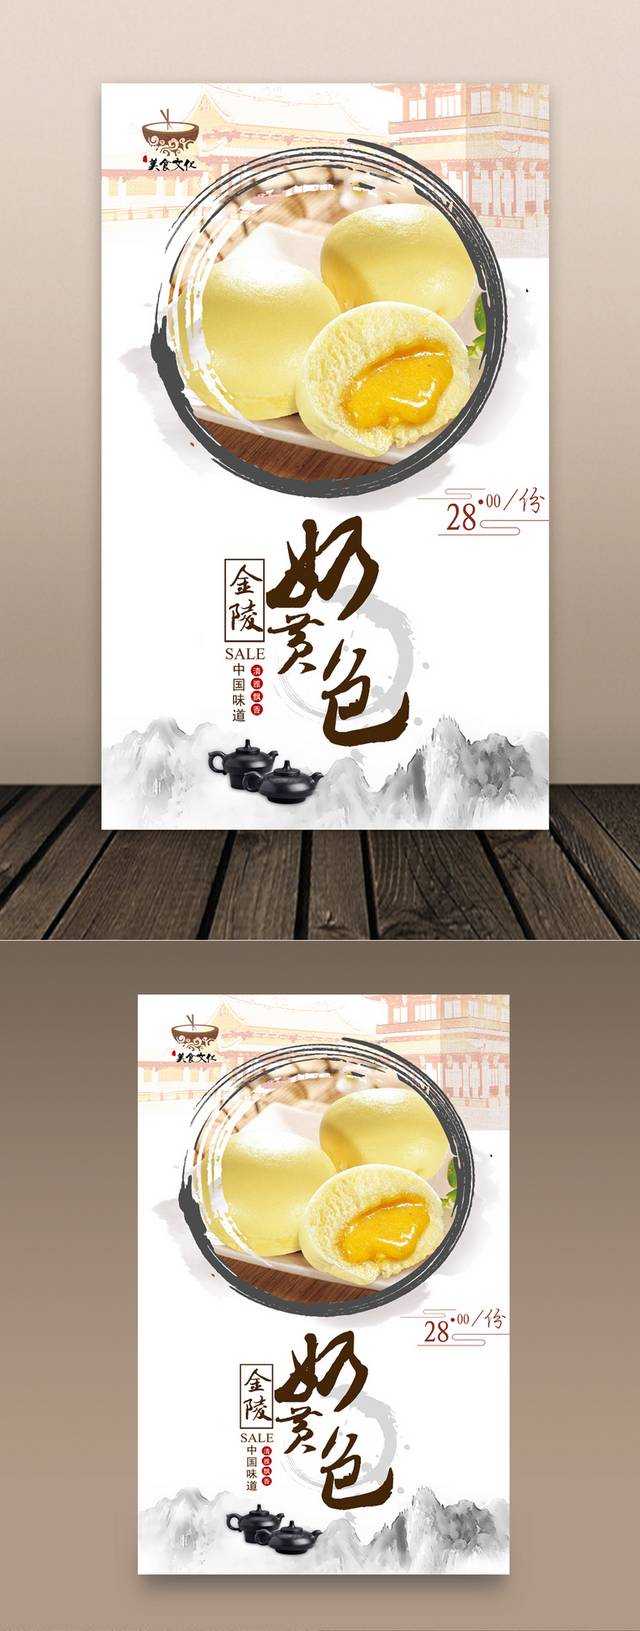 中国风奶黄包宣传海报设计